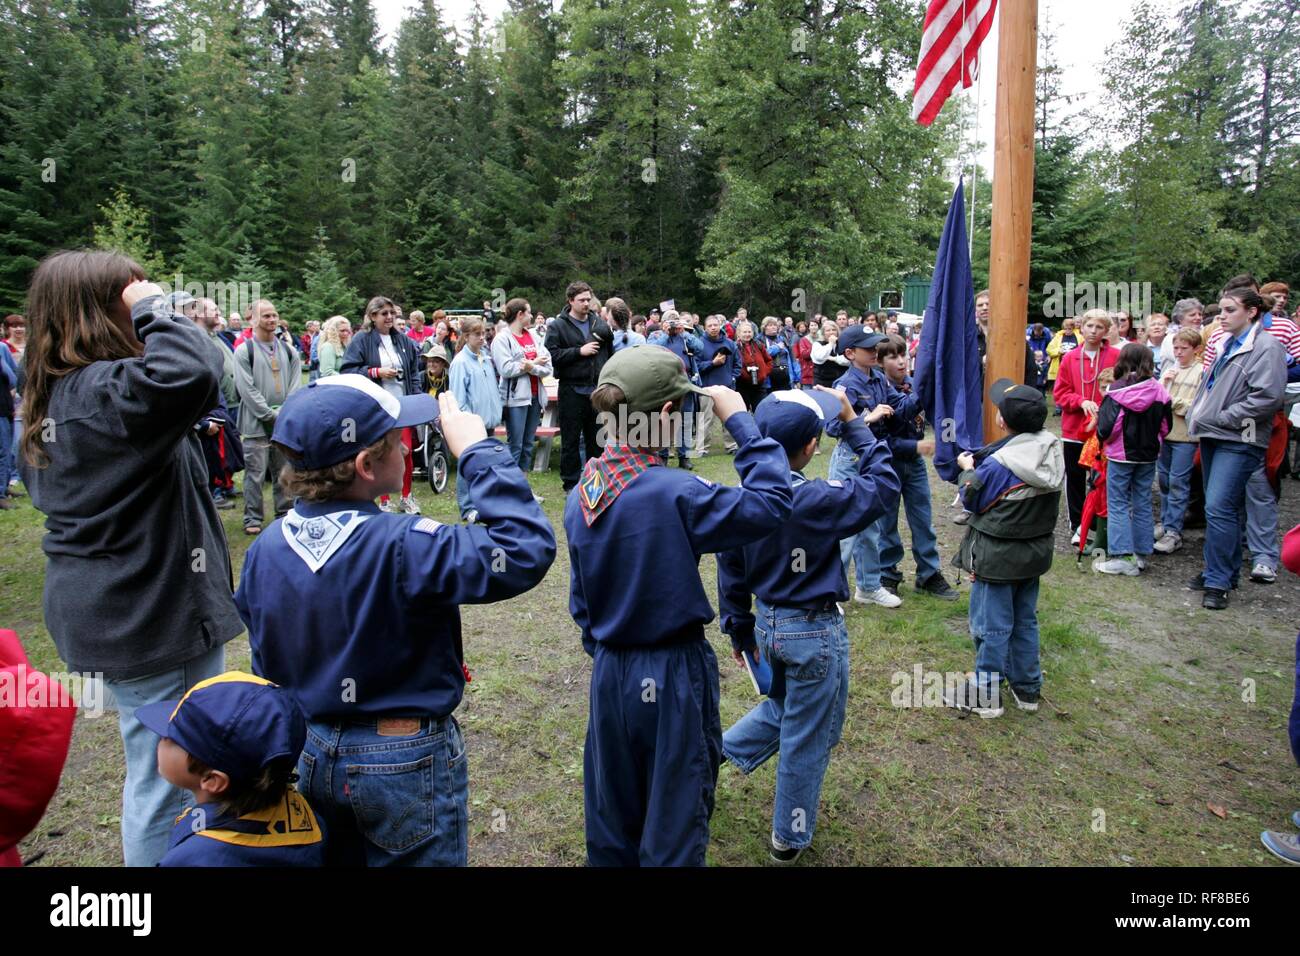 Saluant le drapeau lors des célébrations du 4 juillet (date de l'indépendance) à Gustavus : population 400, Alaska, USA, Amérique du Nord Banque D'Images